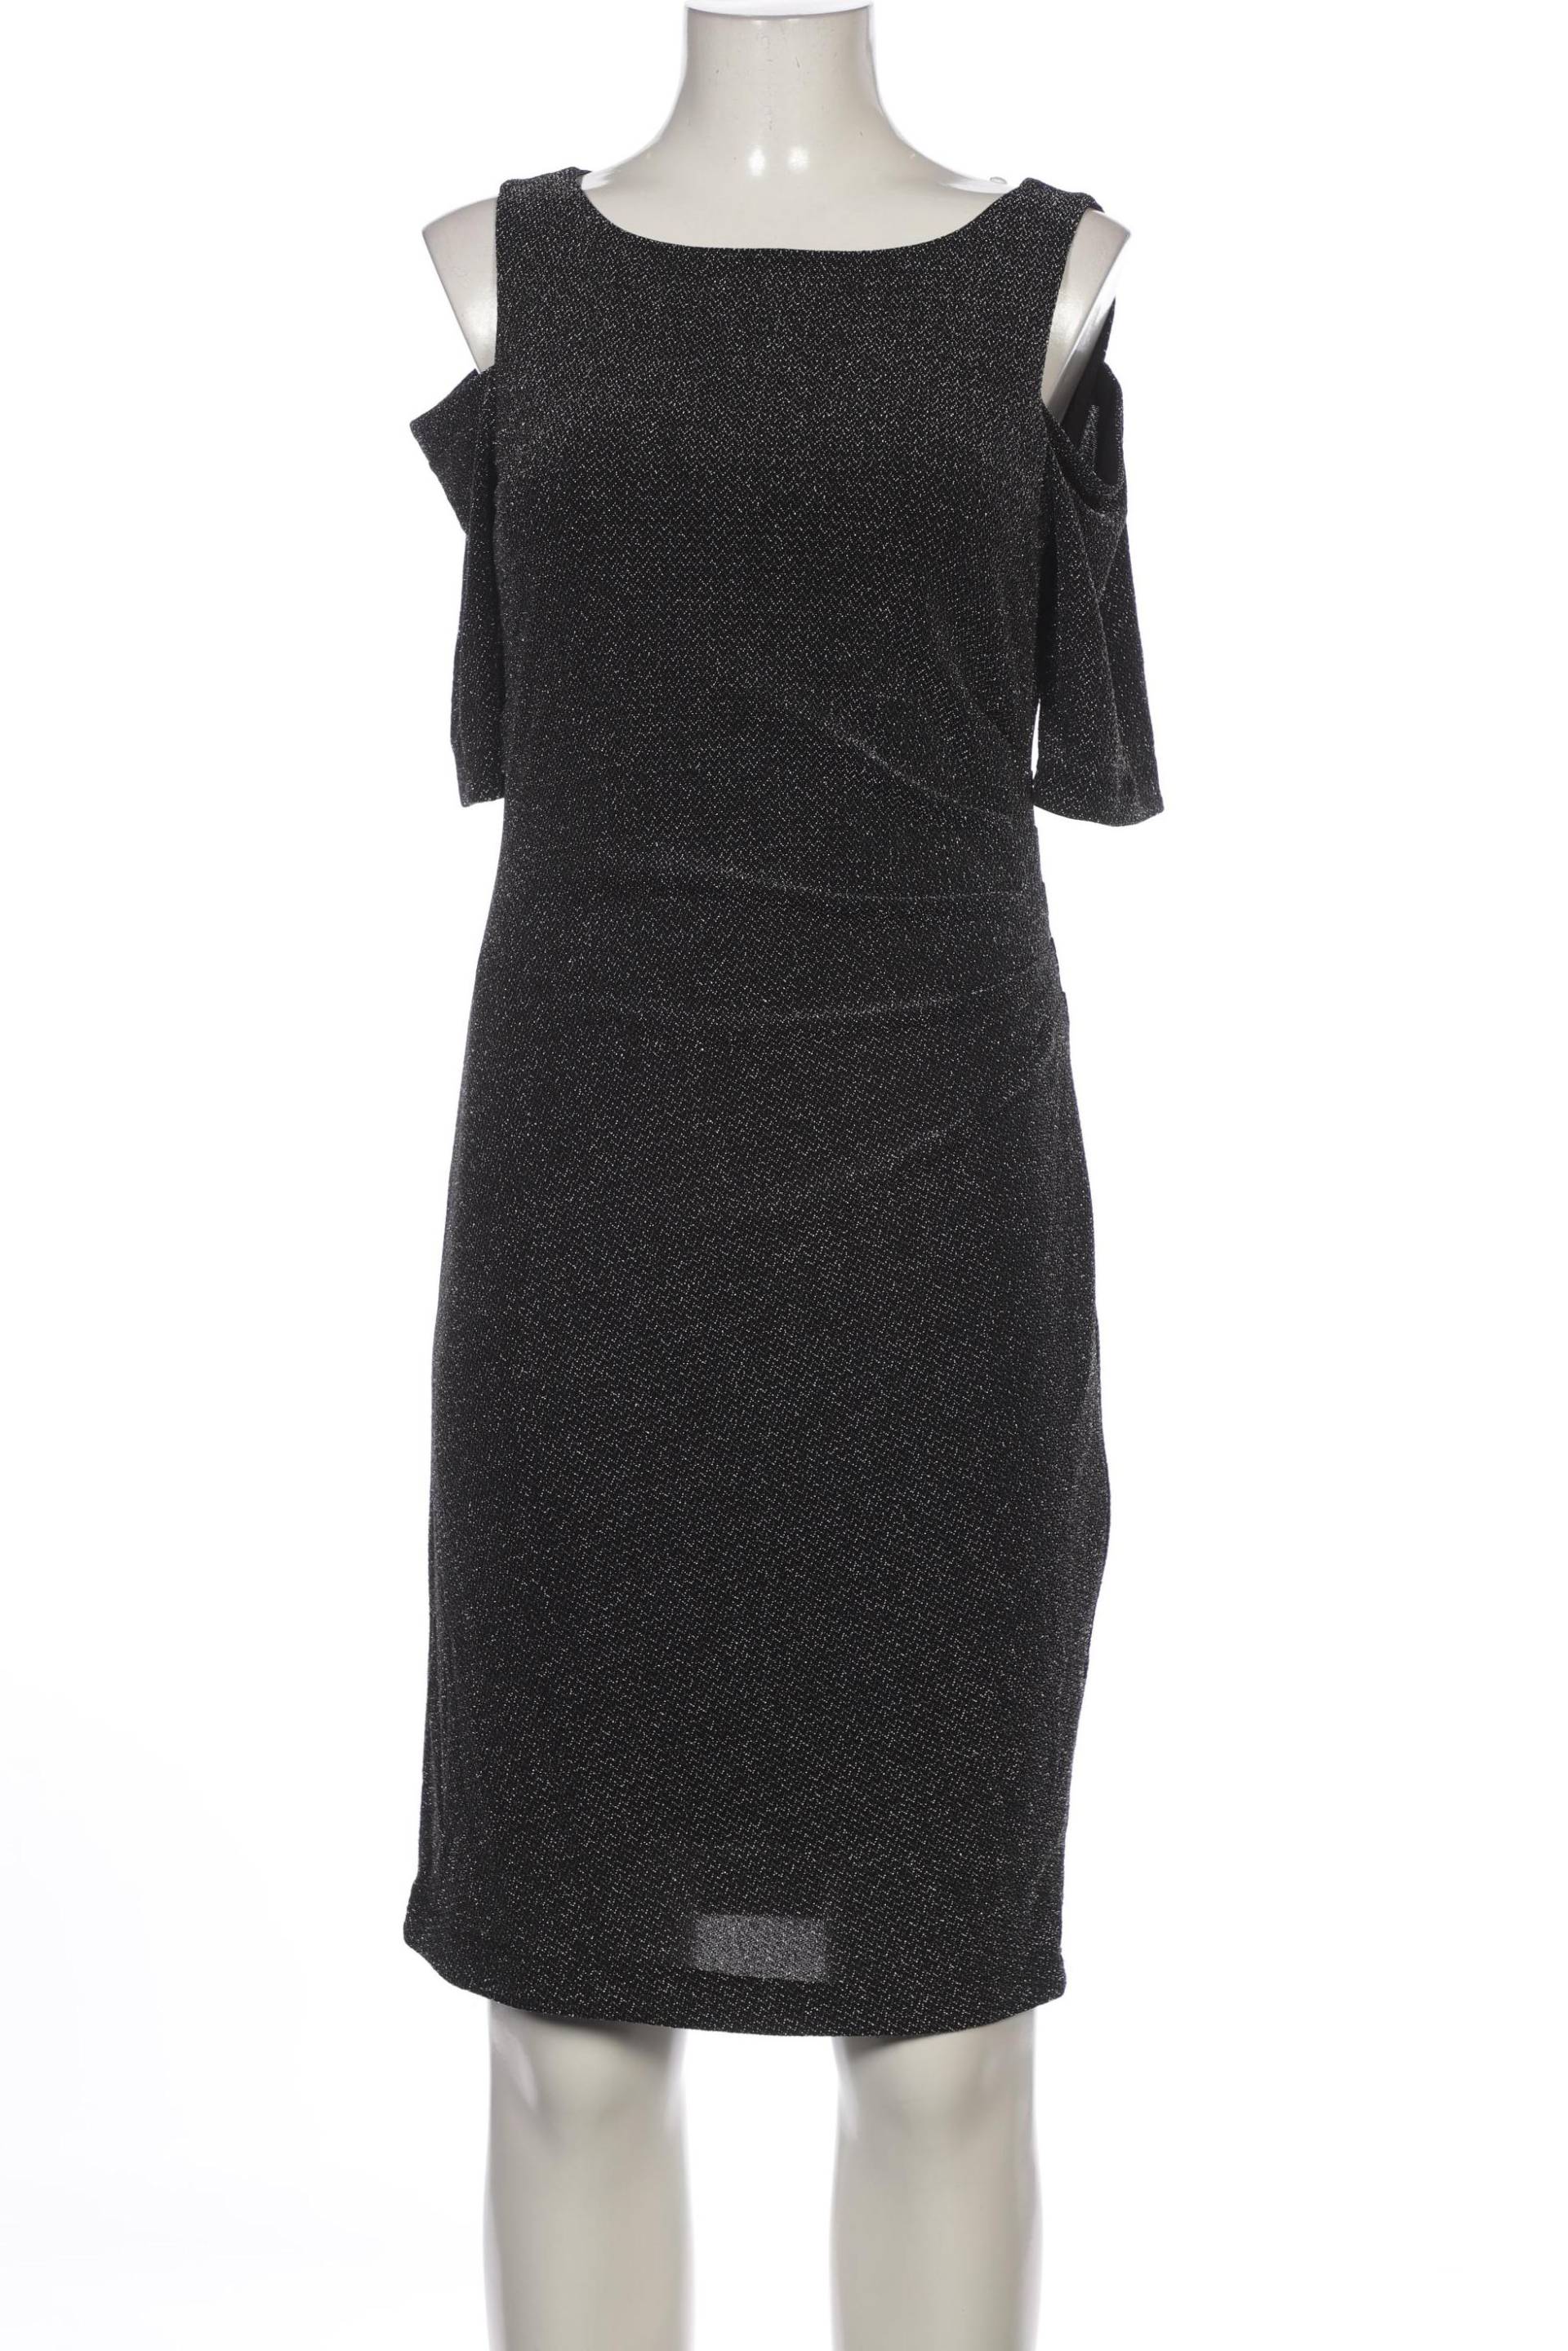 Joseph Ribkoff Damen Kleid, schwarz, Gr. 38 von Joseph Ribkoff